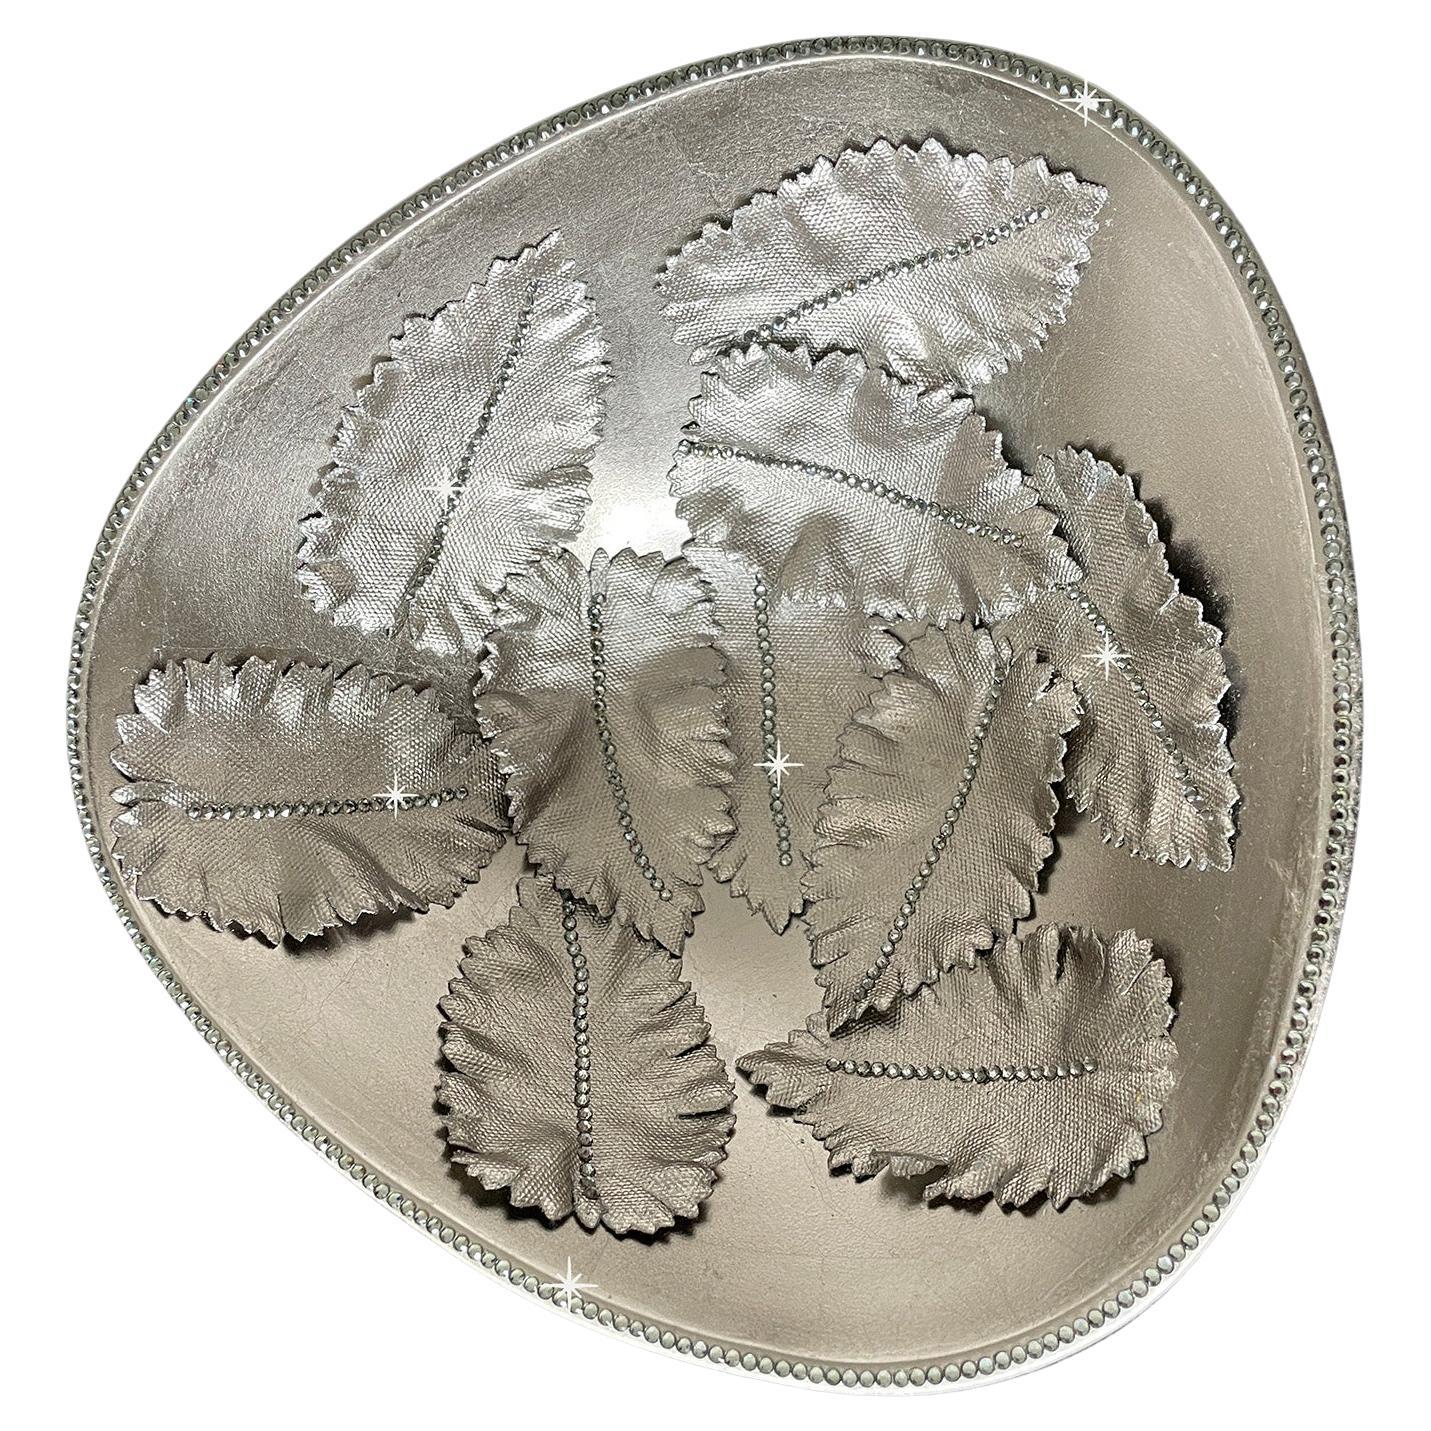 Cuenco de metal con hojas de plata de 20 quilates y cristales en relieve